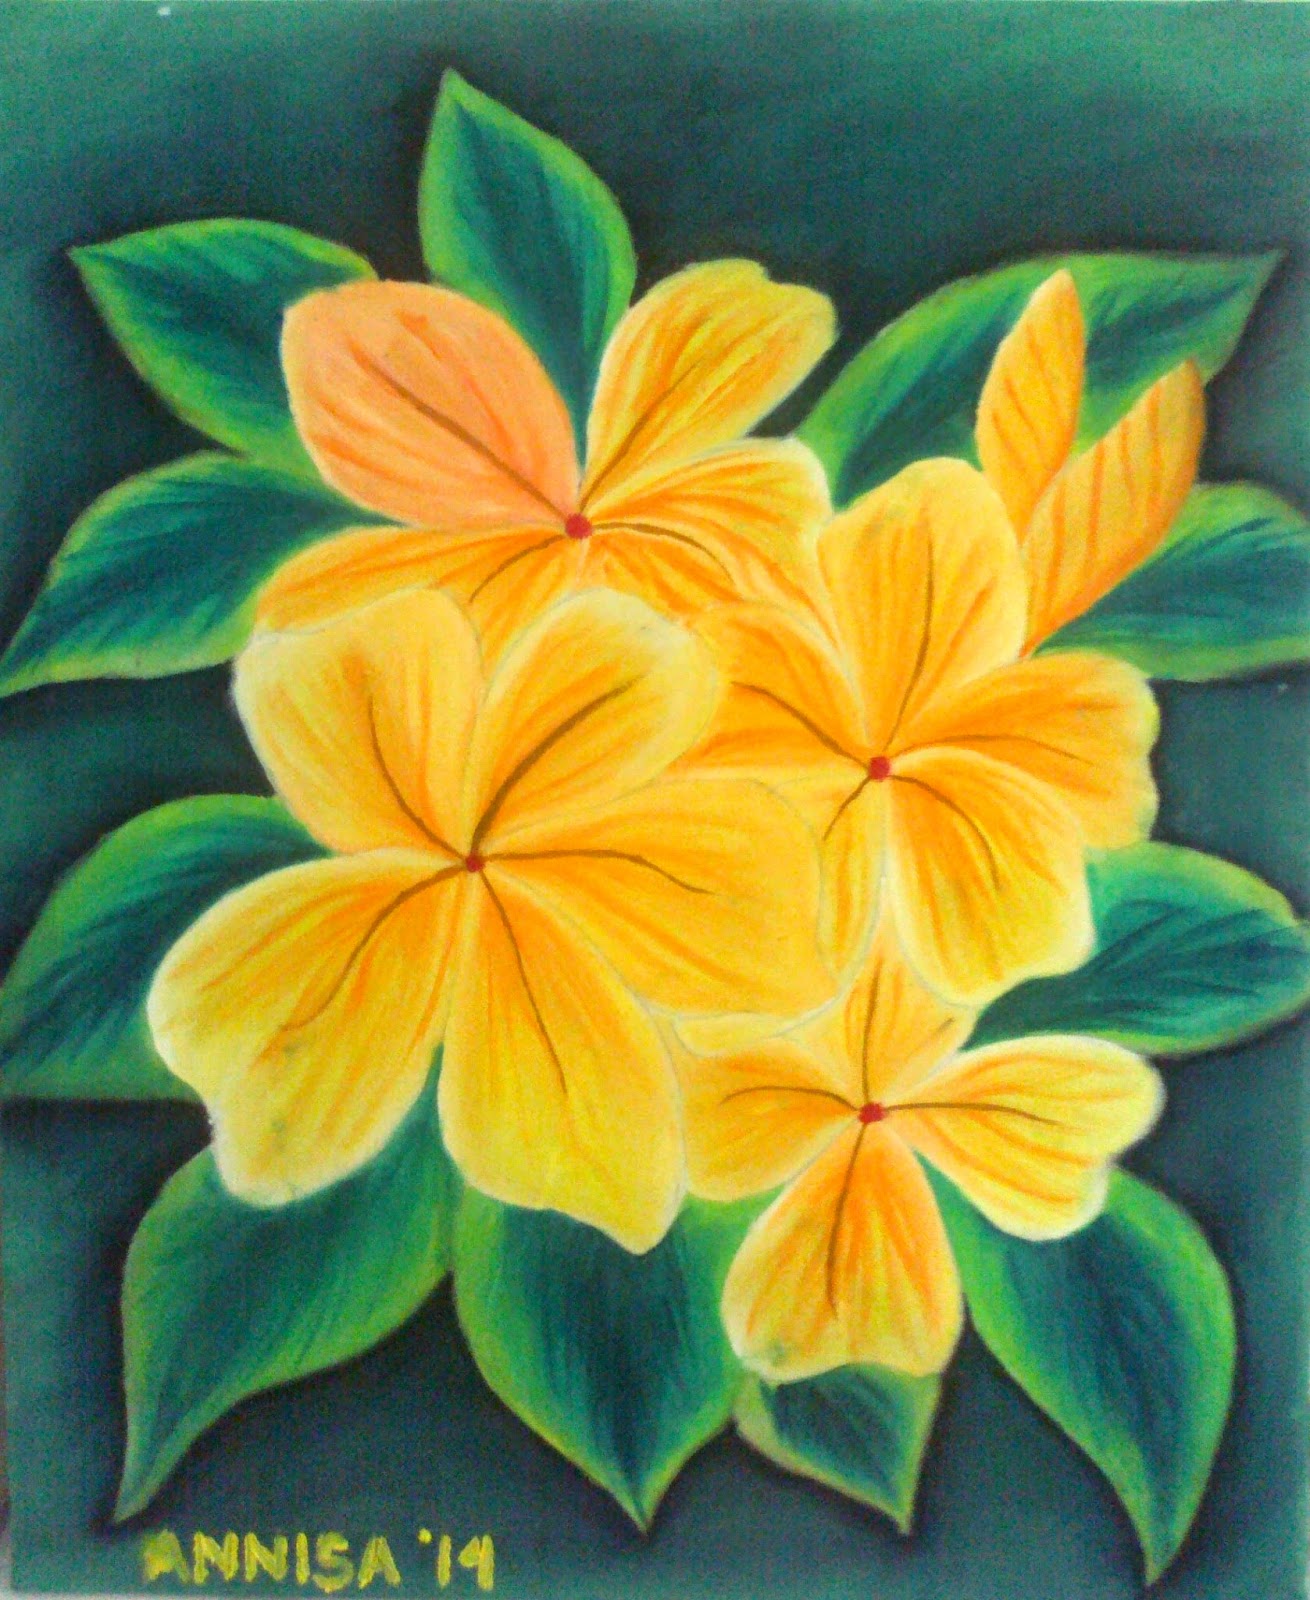 25 Contoh Gambar Lukisan Bunga Sederhana Super Keren 